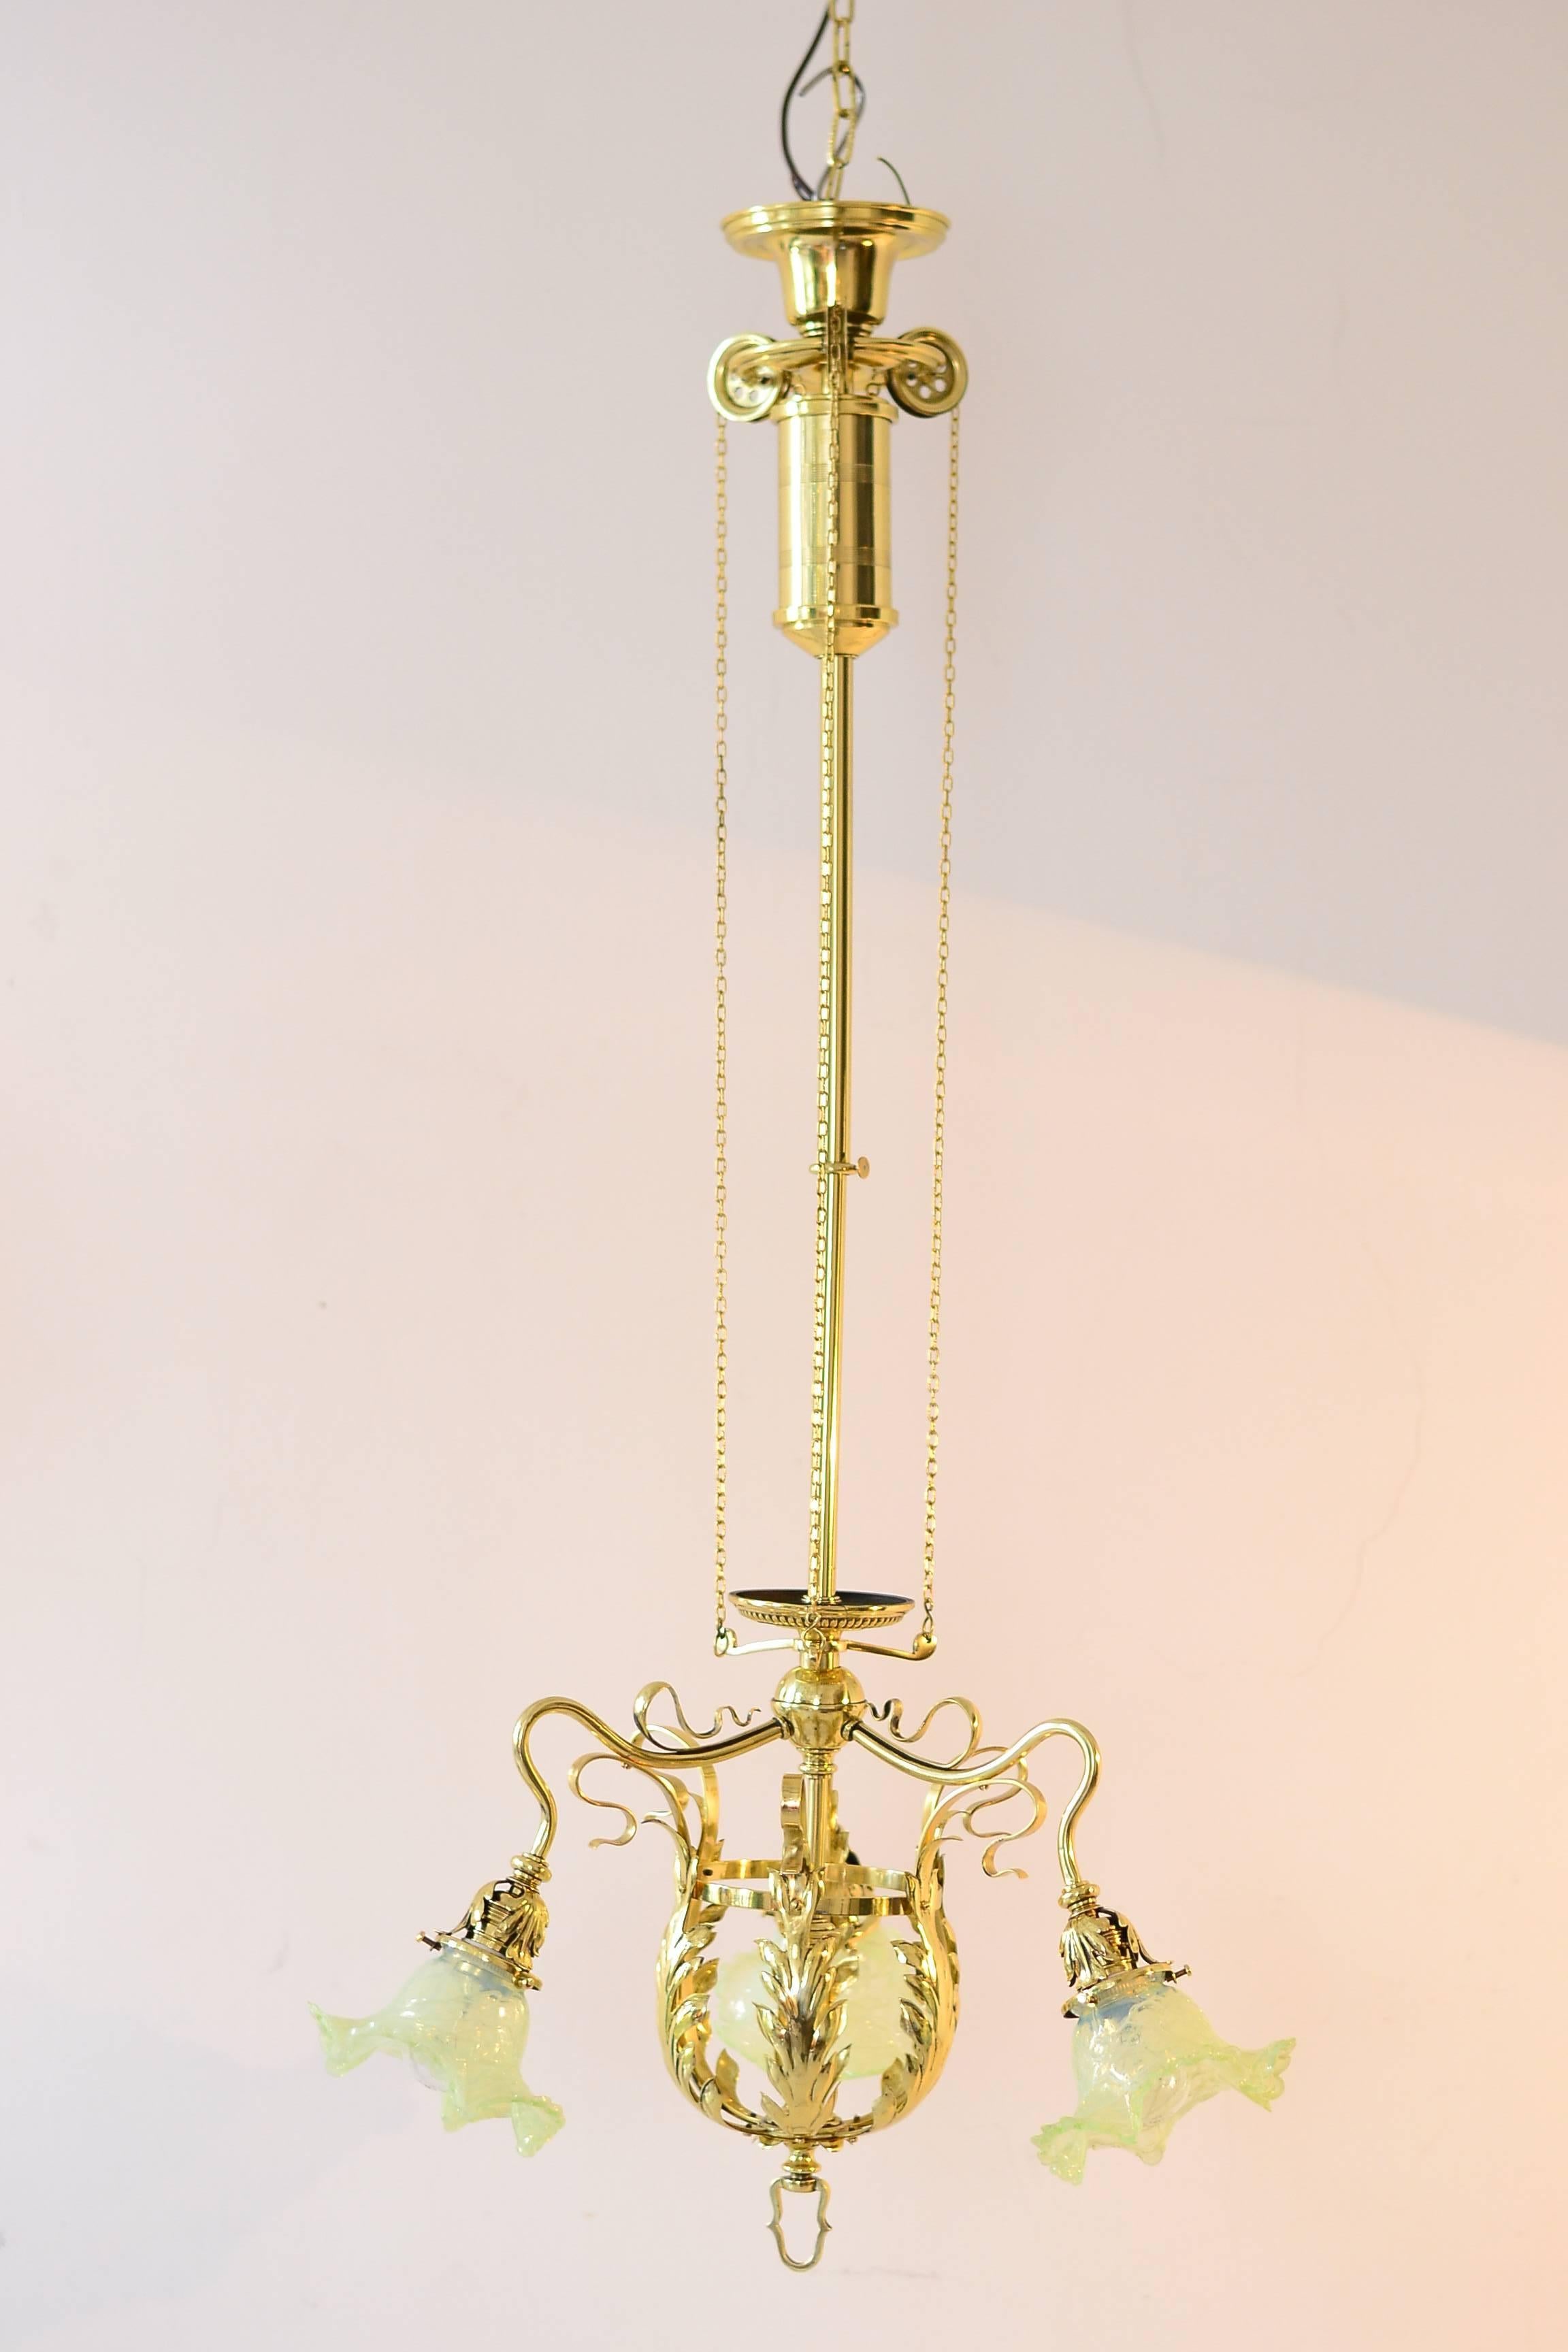 Adjustable jugendstil flowers chandelier with Palme König glass shades
polished and stove enameled.
Pulled in high: 94cm.
Pulled out: 120cm.